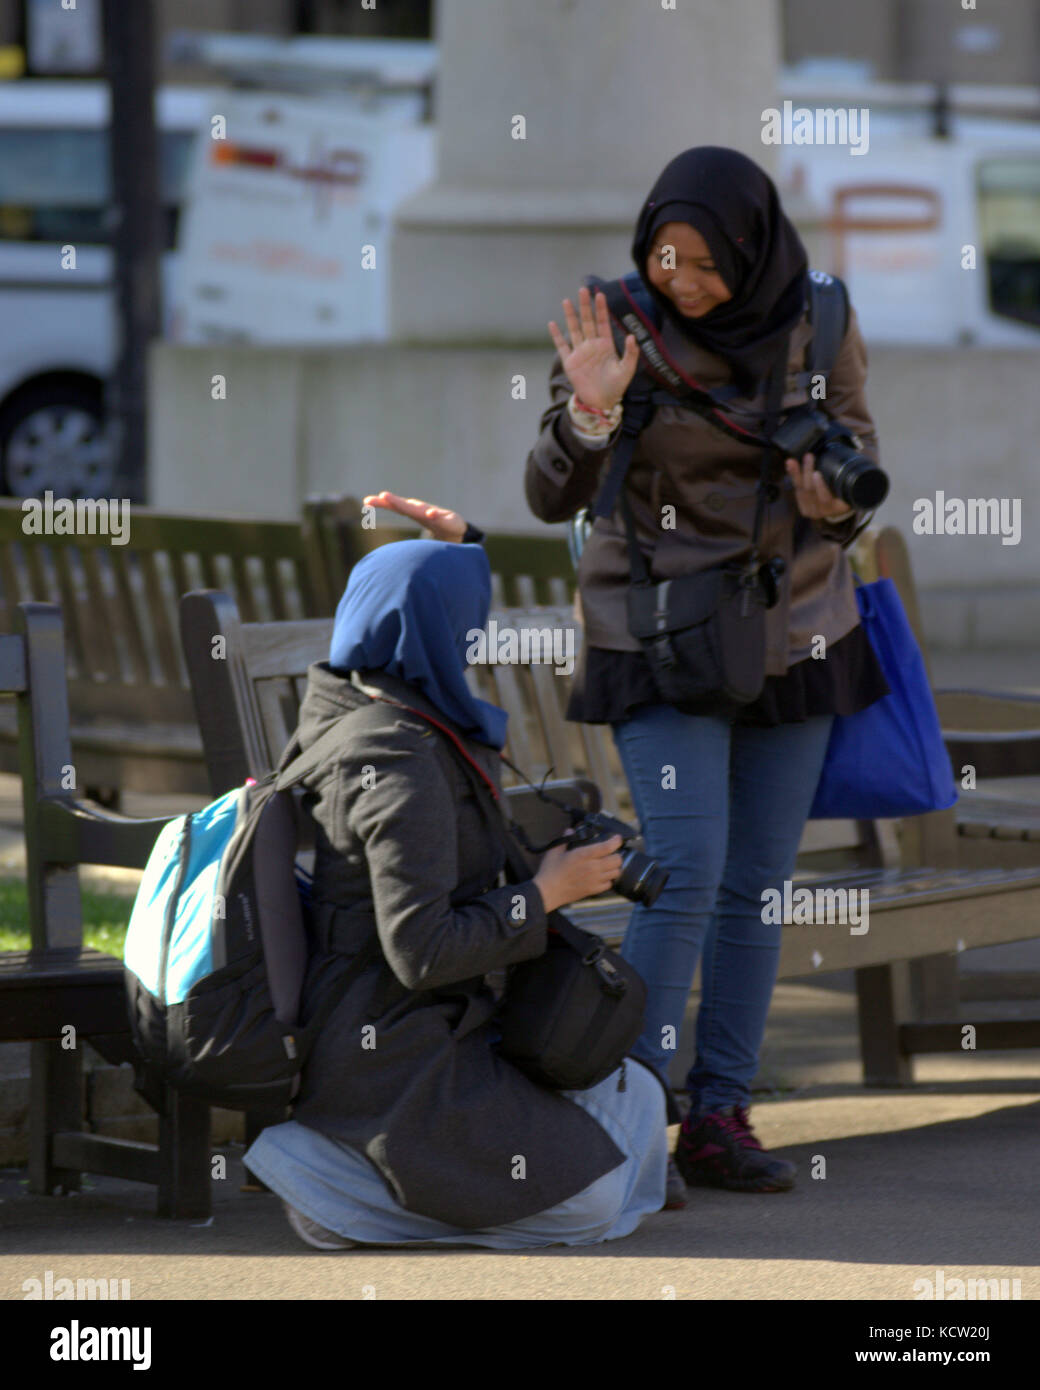 George square Glasgow touristes foulard hijab fille asiatique cinq haut Banque D'Images